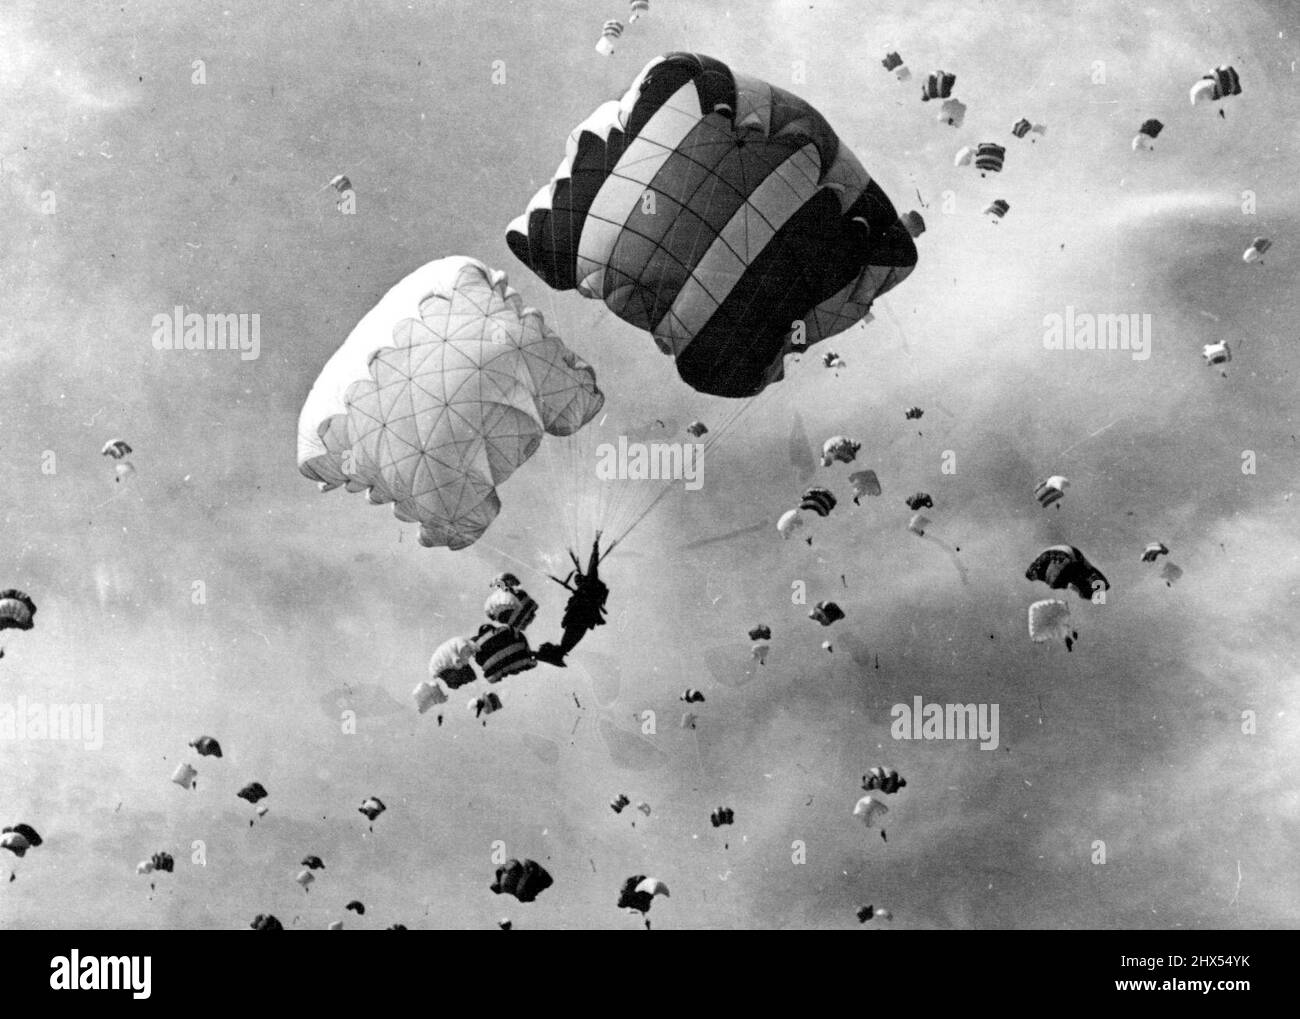 Les célébrations de la Journée de la Force aérienne à Prague -- Une descente en parachute massive d'hommes et d'équipements devant un public de plusieurs milliers - font partie des célébrations de la Journée de la Force aérienne tchécoslovaque à Prague. 21 septembre 1954. (Photo de Sport & General Press Agency Limited) Banque D'Images